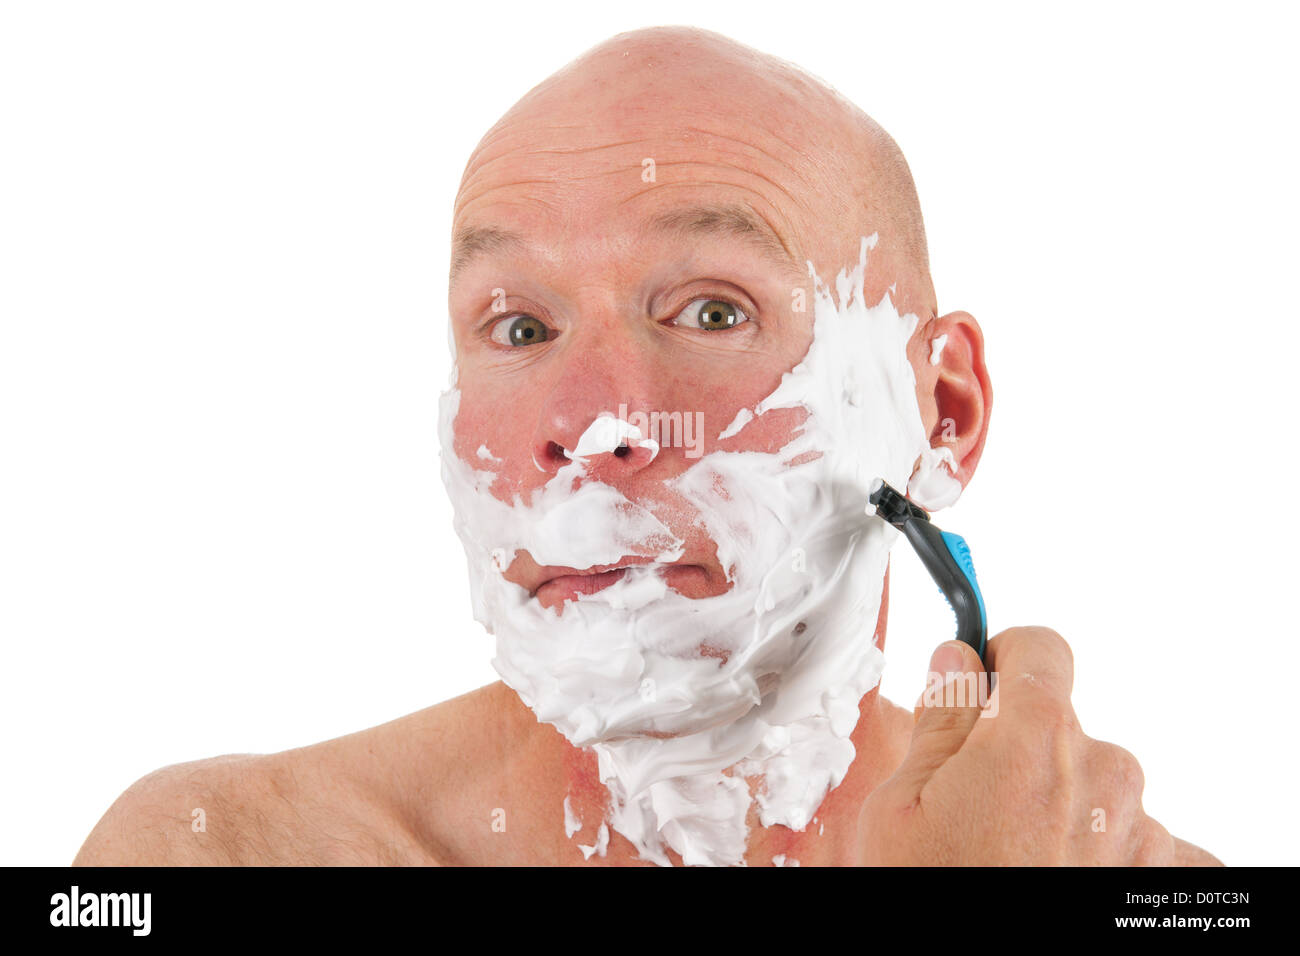 Le rasage homme chauve avec mousse et rasoir Photo Stock - Alamy